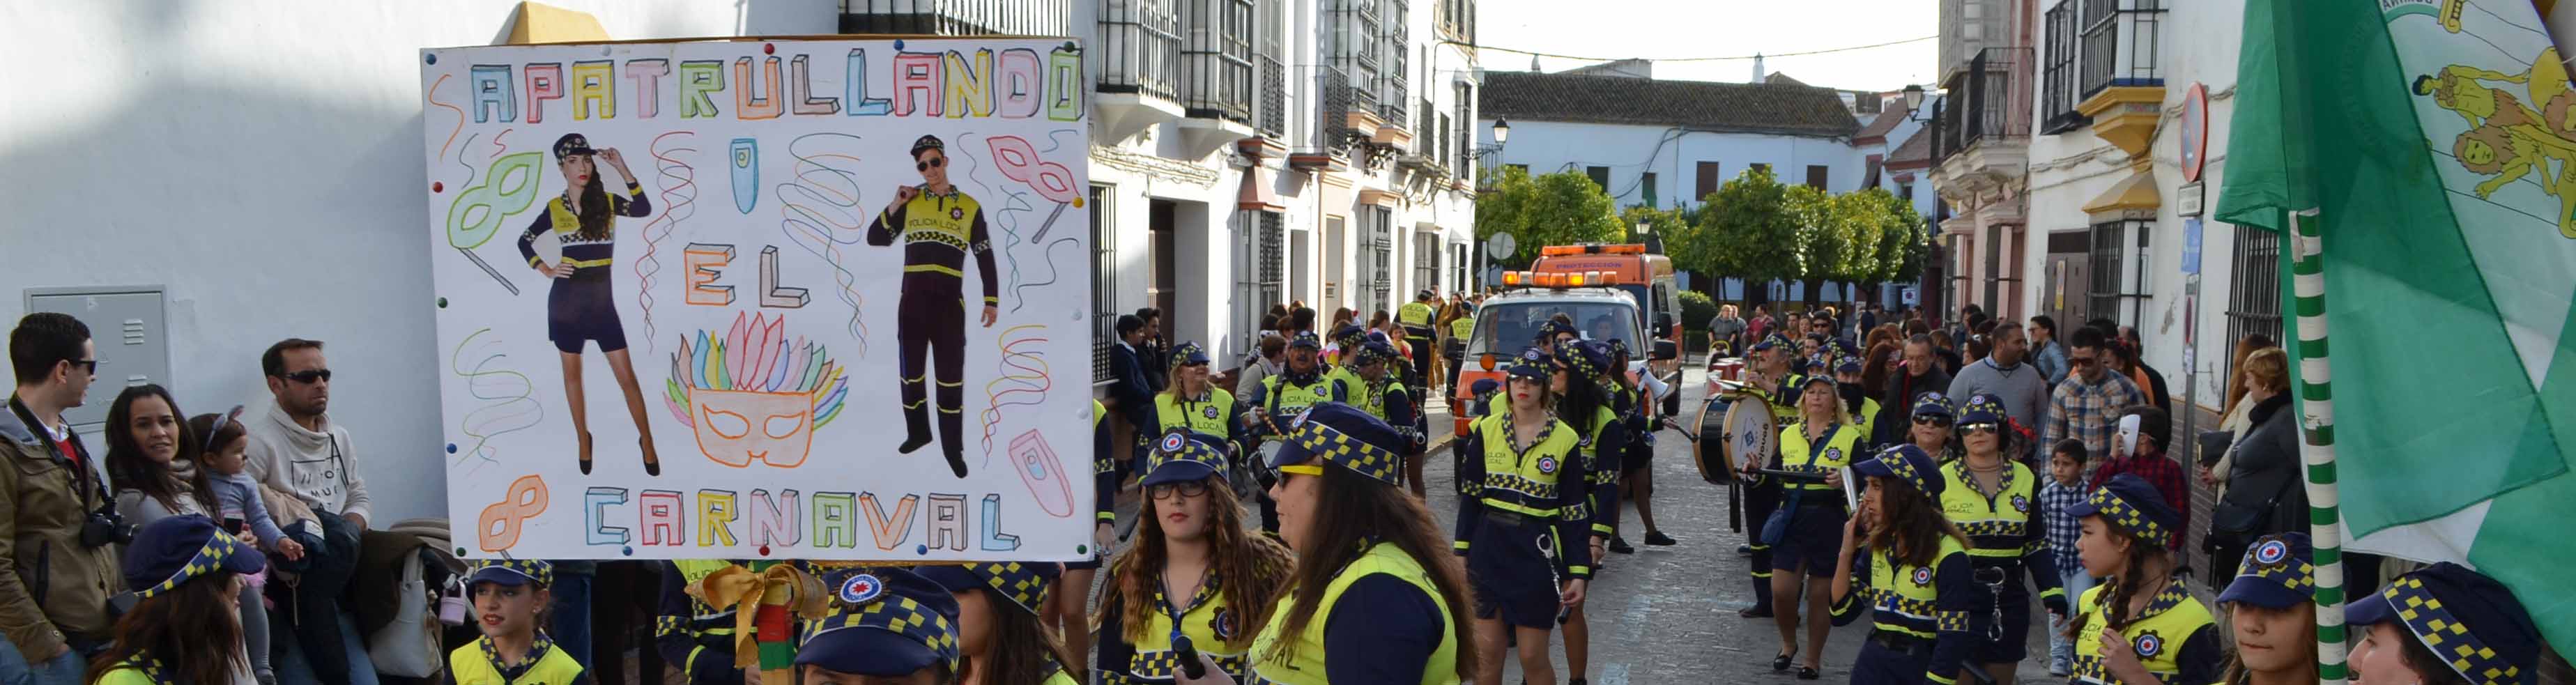 El carnaval de Utrera cuenta con pasacalles y concursos de disfraces